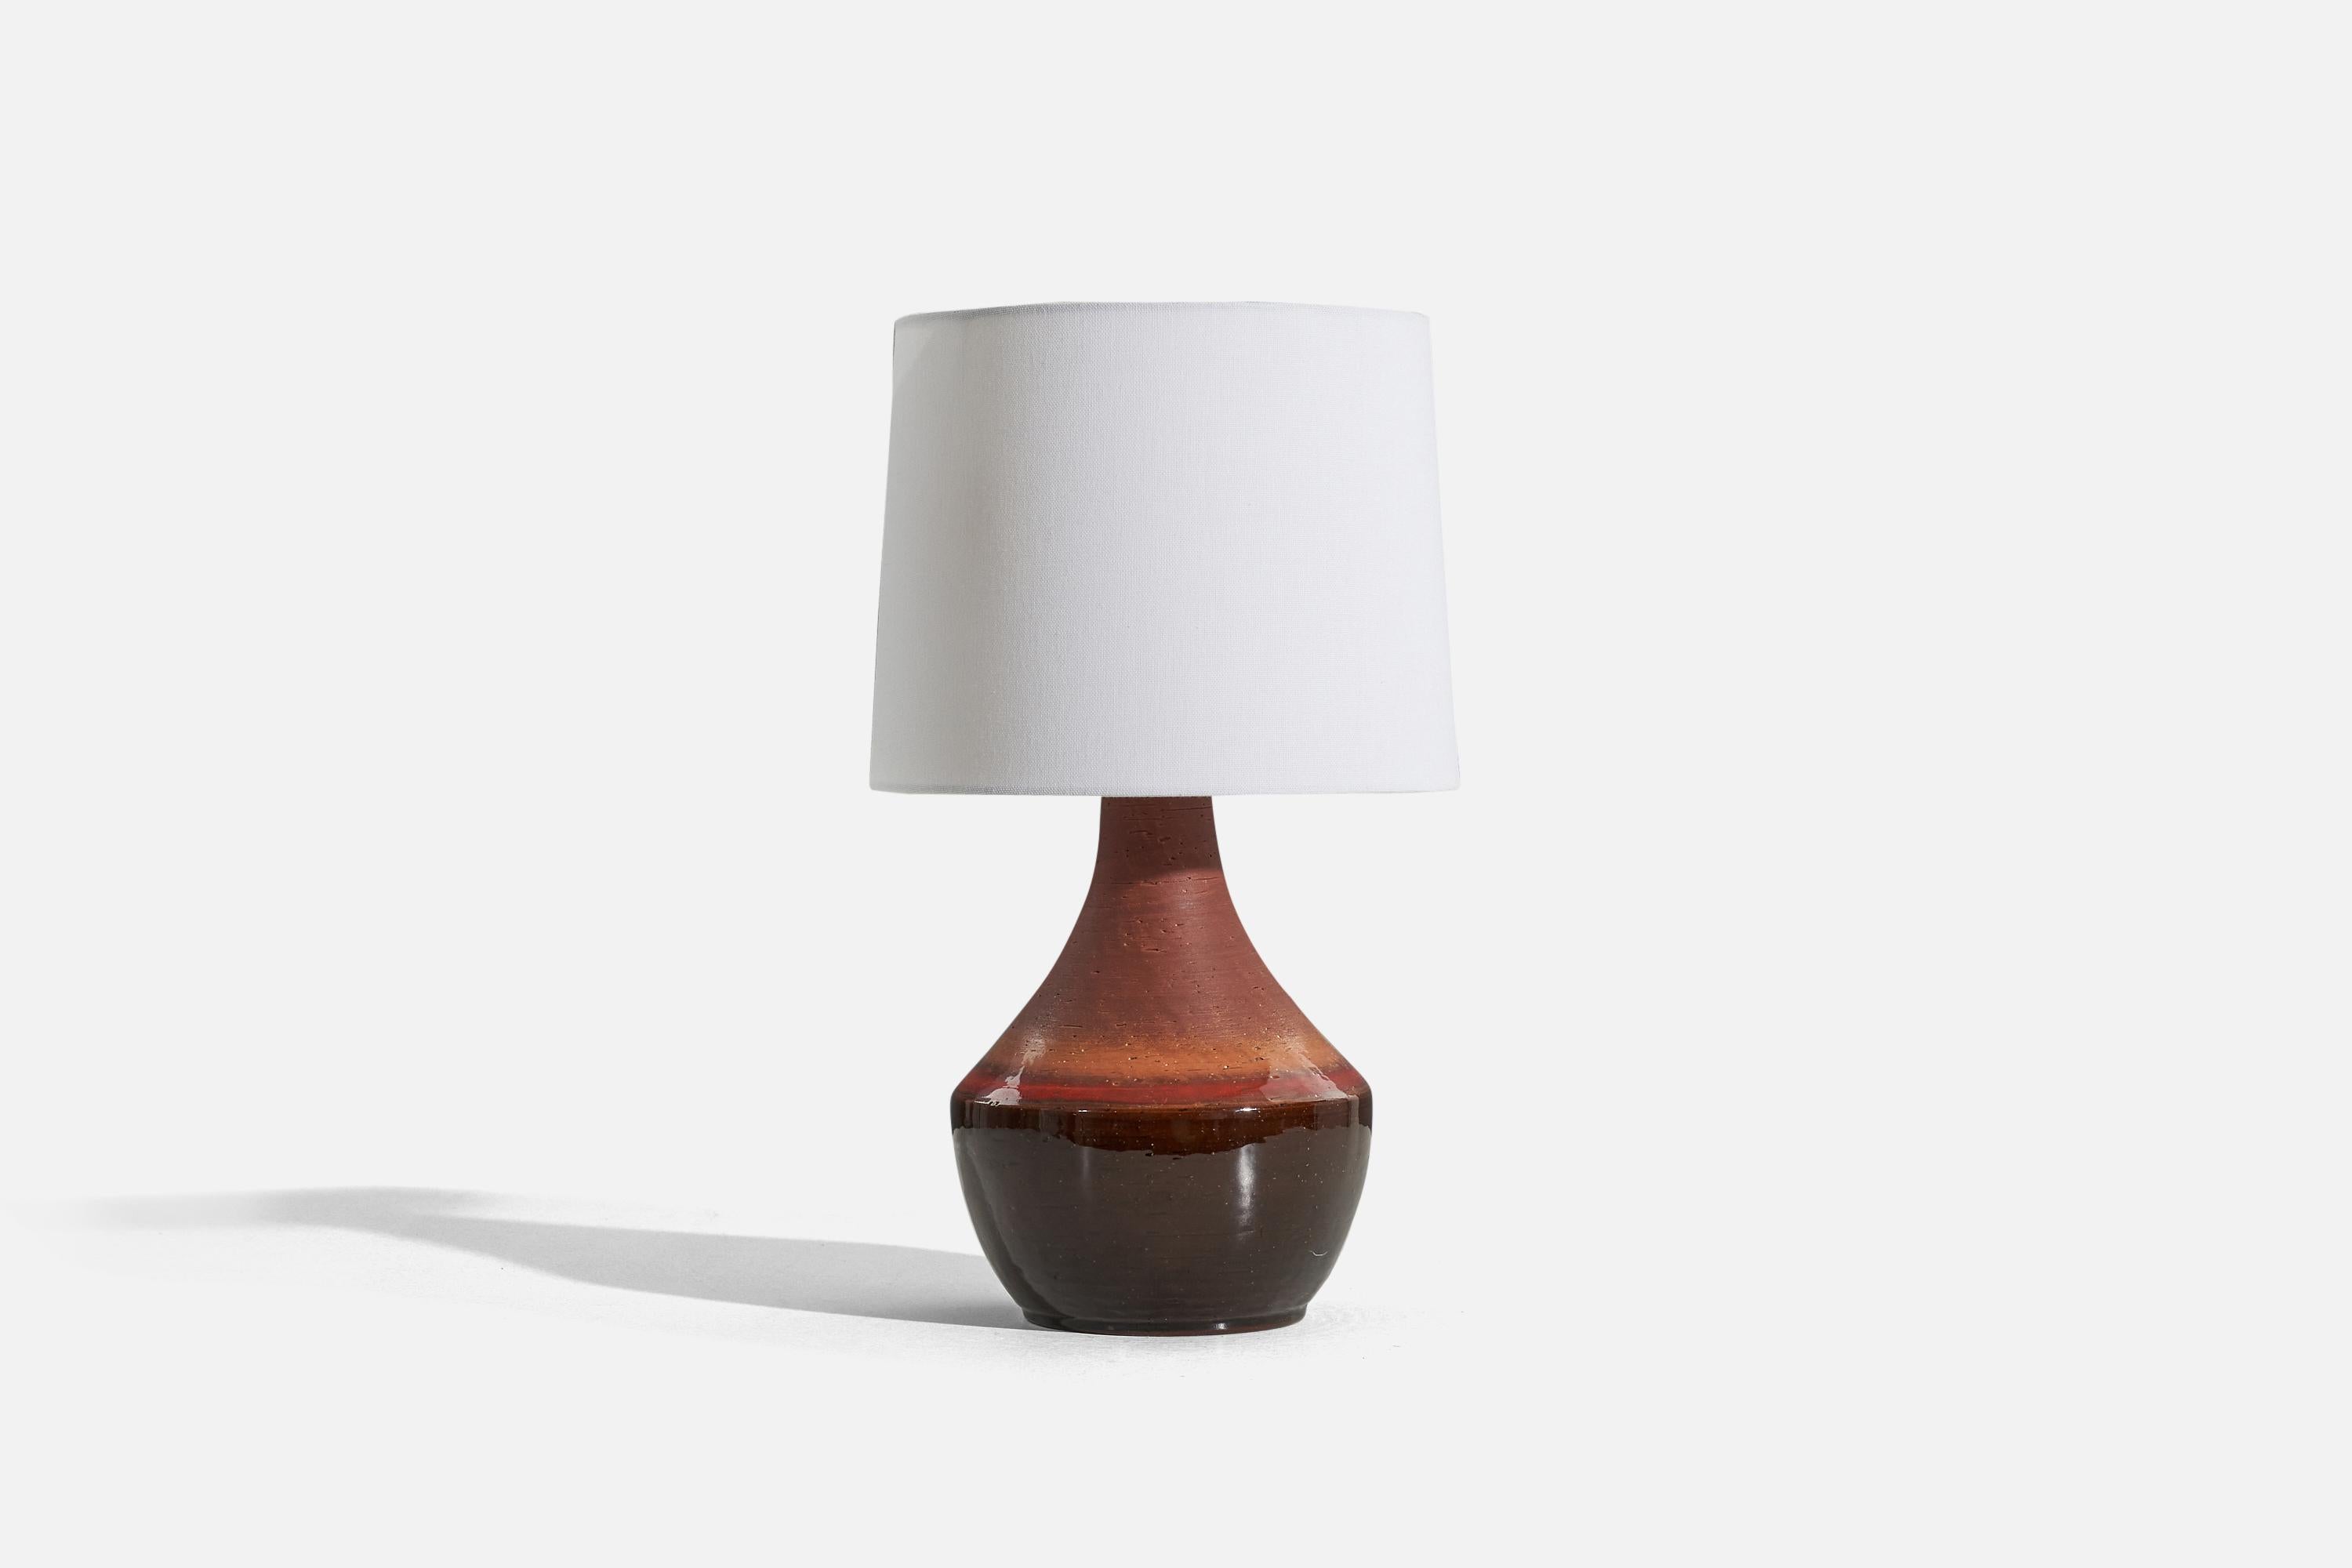 Lampe de table en grès émaillé brun et rouge, conçue par Mats Birgersson et produite par son propre studio, Töreboda Keramik, vers les années 1960. 

Vendu sans abat-jour. 
Dimensions de la lampe (pouces) : 13.25 x 7,25 x 7,25 (H x L x